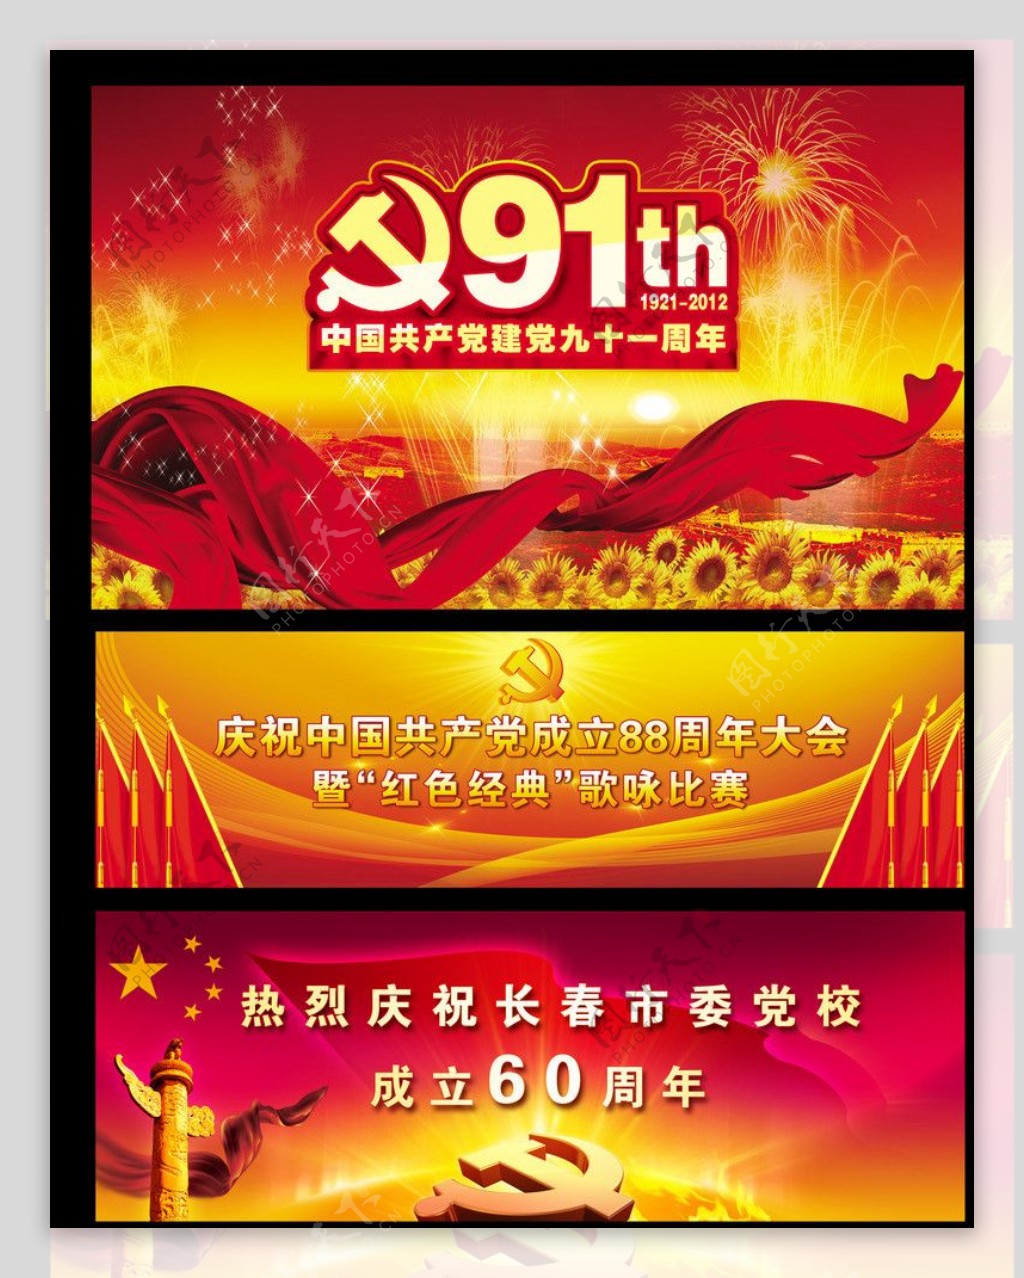 国庆节舞台背景图片